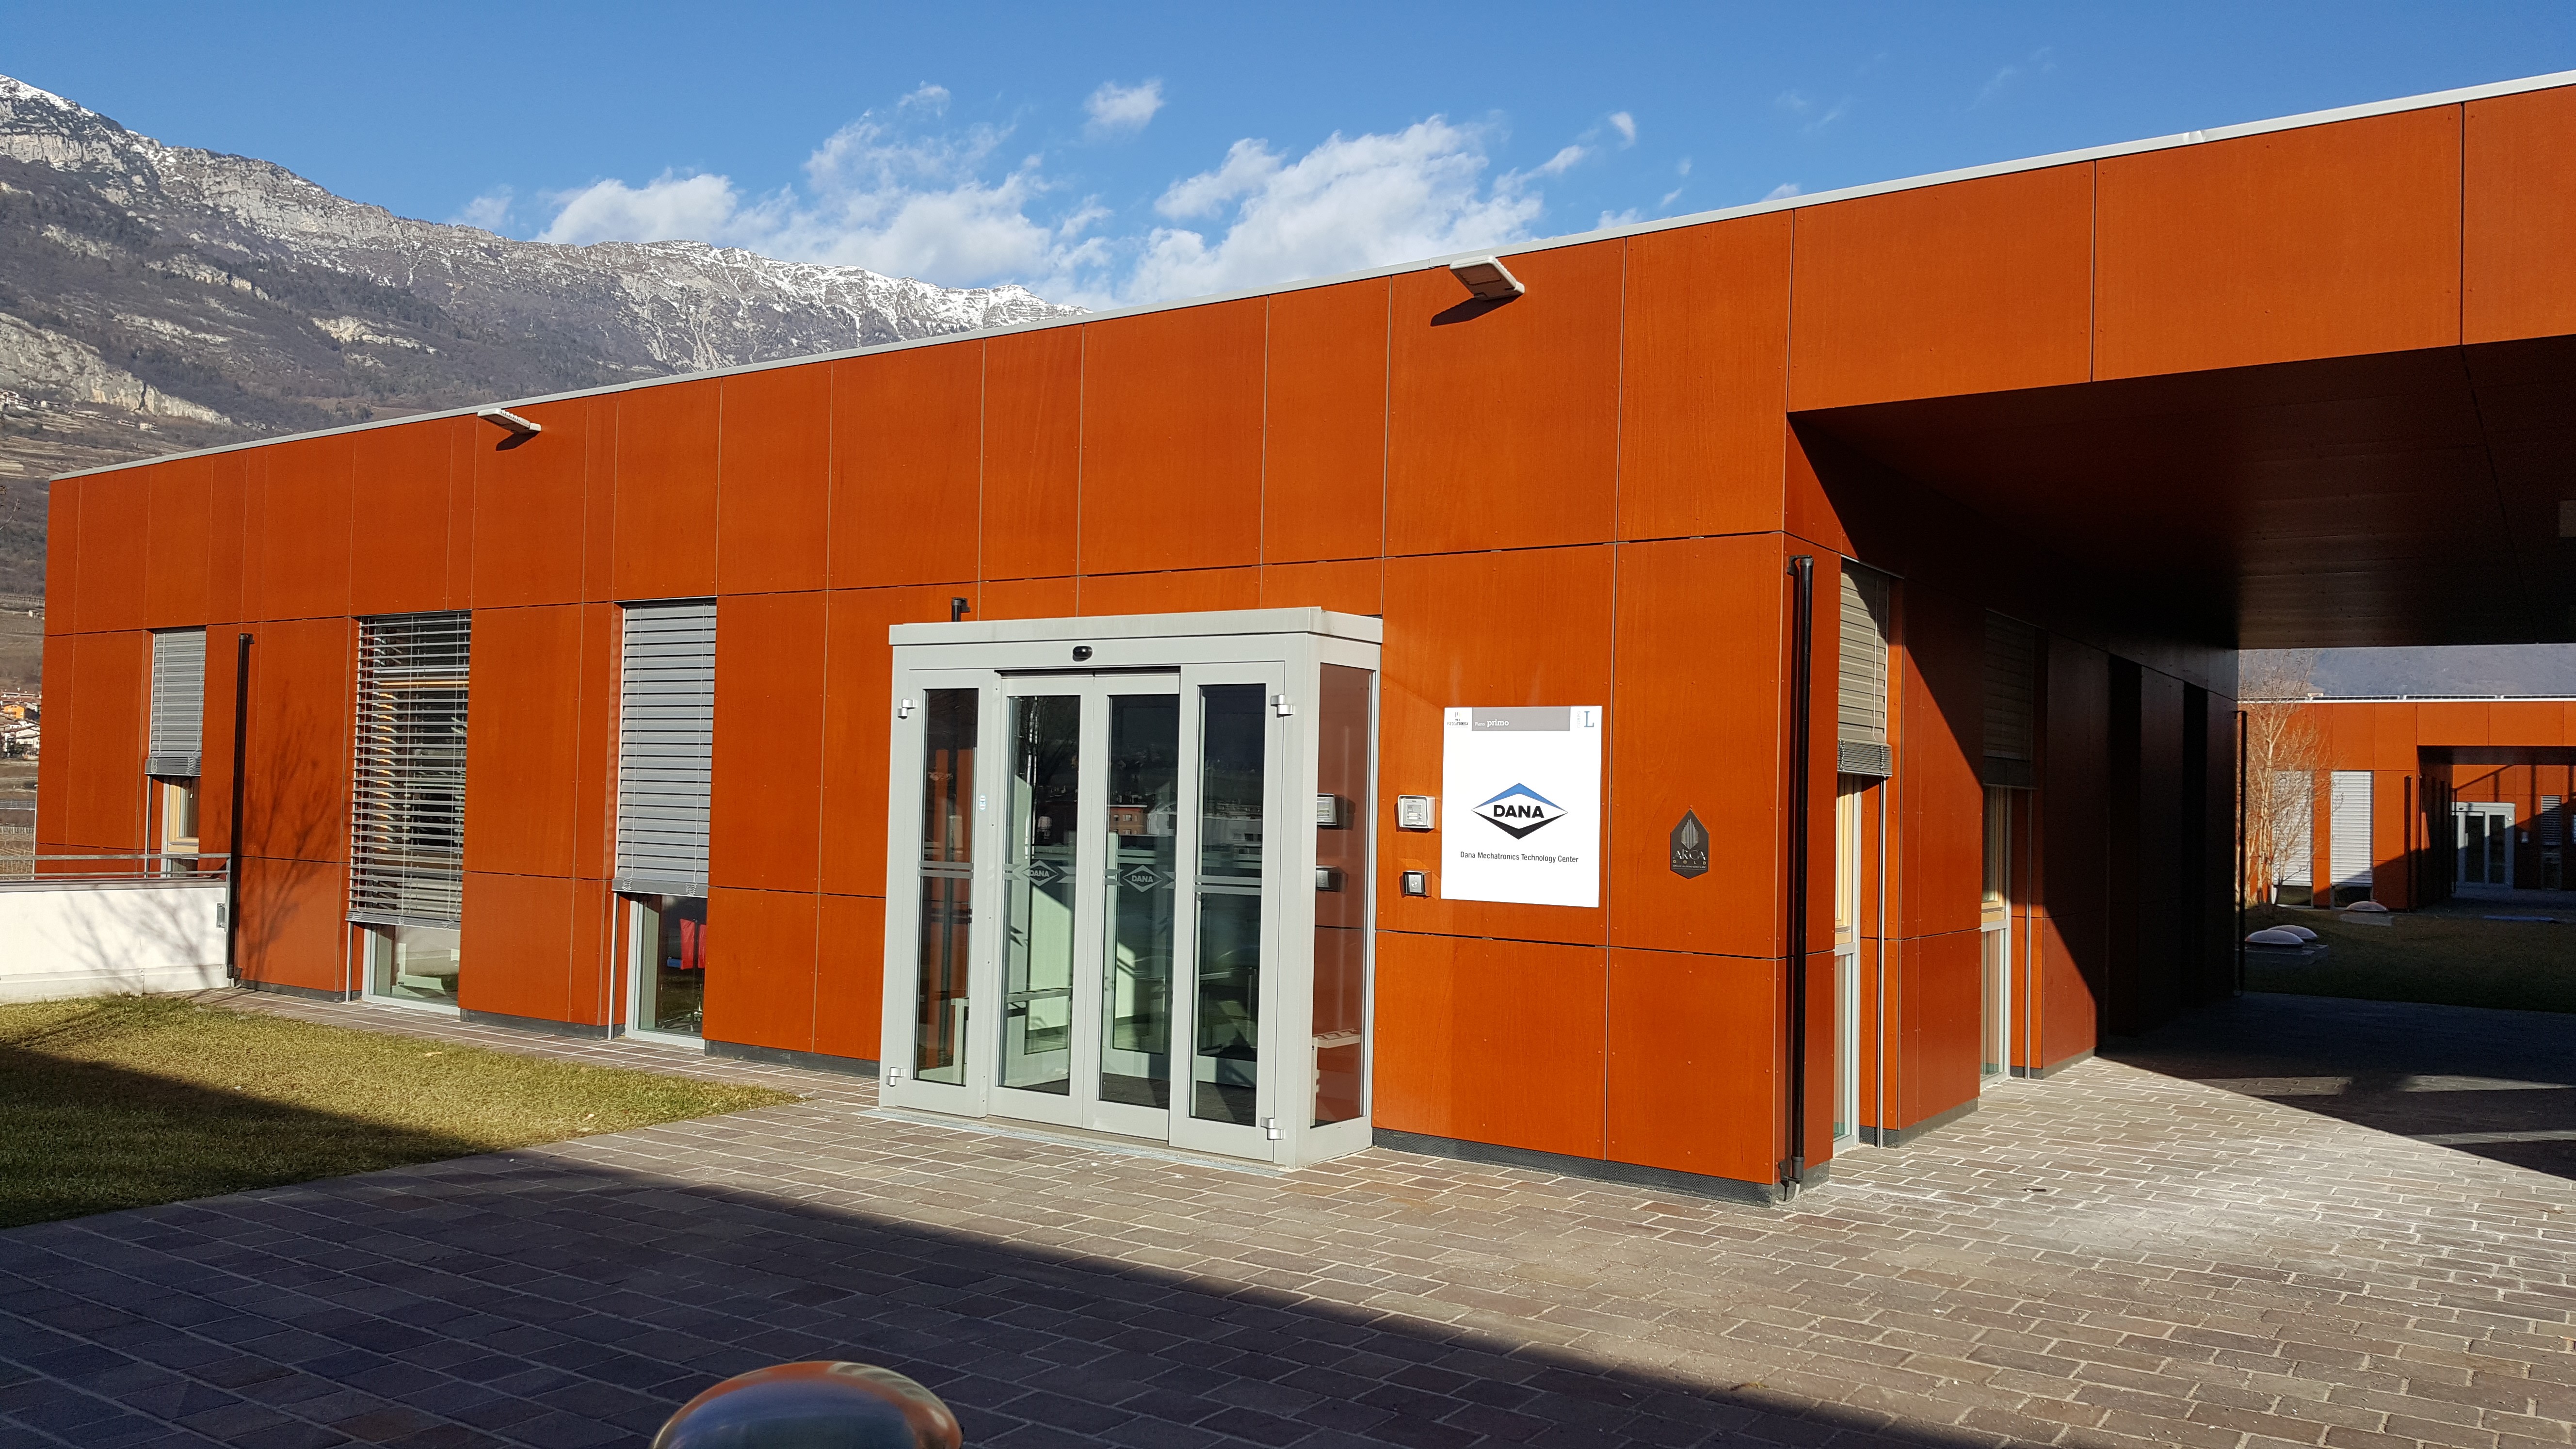 Dana Rovereto Technology Center, Italy